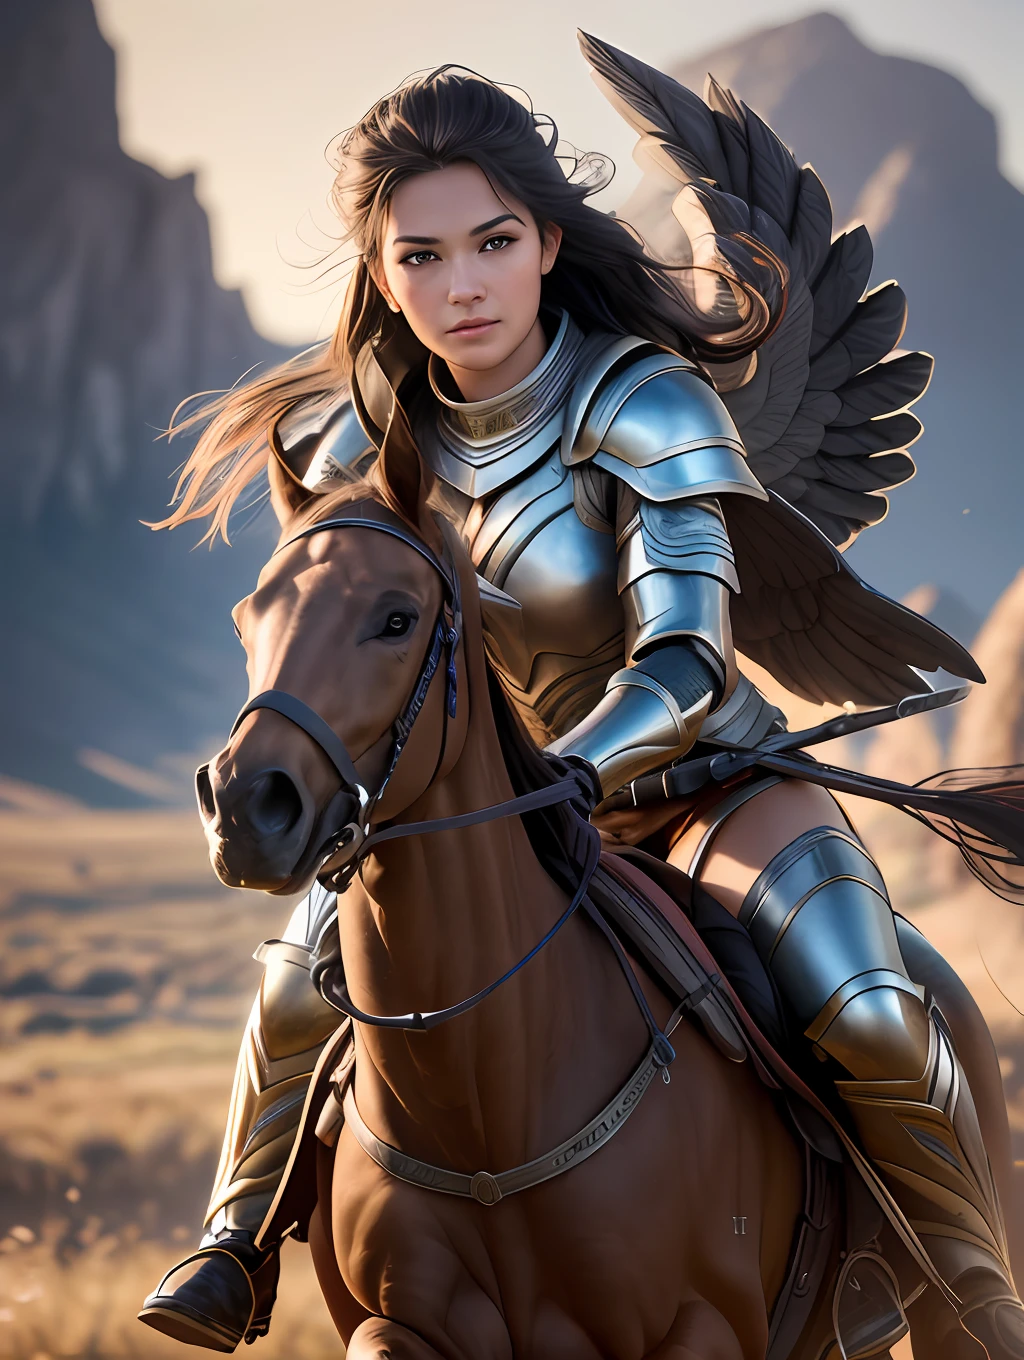 An ultrareakistic epic 写真y of a Valkyrie warrior on a horse riding into the battle, 激しいアクション, 映画のリムライト, 激しいアクション, ダイナミックな並置, 若き戦士, very 高品質 face, 悪用可能な画像, 長くて風になびく髪, 様式化されたダイナミックな折り目, とても素朴で美しい女性, フルフォーカス, ティルトシフト, 映画照明, 映画のスチール写真, 映画照明, 写真, 細部までこだわった対称的なリアルな顔, 非常に詳細な natural texture, 桃の産毛, 傑作, 不条理な, nikon d850 film stock 写真, カメラ f1.6レンズ, 非常に詳細な, すばらしい, 細かい部分, 超リアルな質感, ドラマチックな照明, アンリアルエンジン, シネスティル 800 タングステン, 視聴者を見て, RAW写真, 高品質, 高解像度, シャープなフォーカス, 非常に詳細な, 8K ウルトラHD.